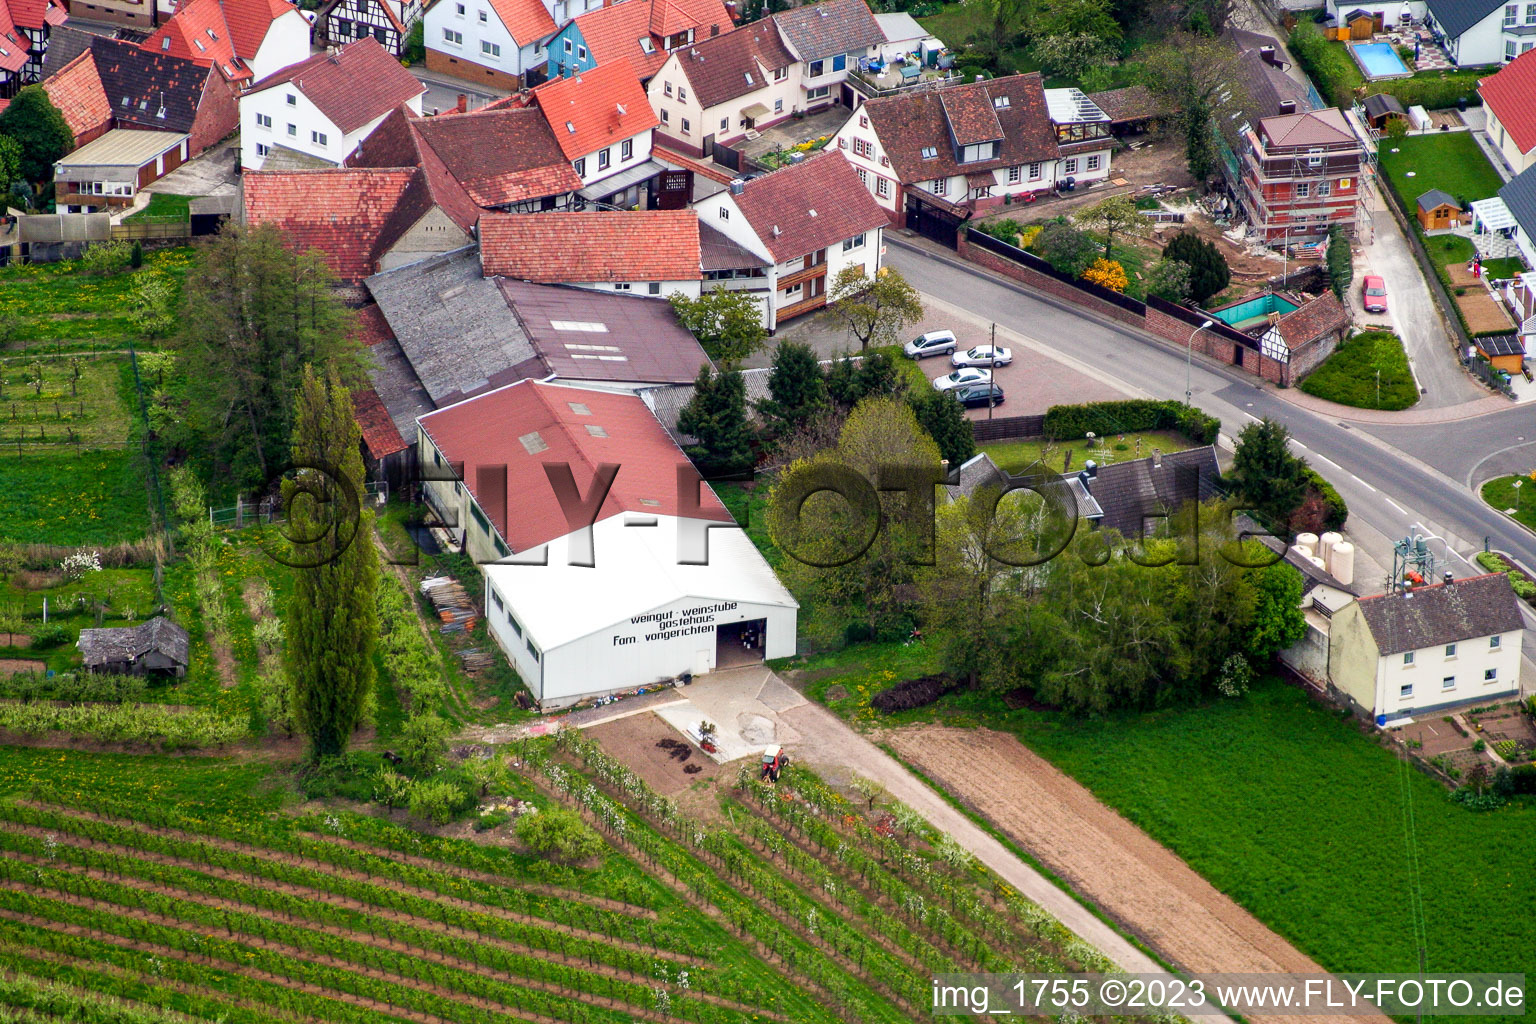 Oberhausen im Bundesland Rheinland-Pfalz, Deutschland aus der Drohnenperspektive